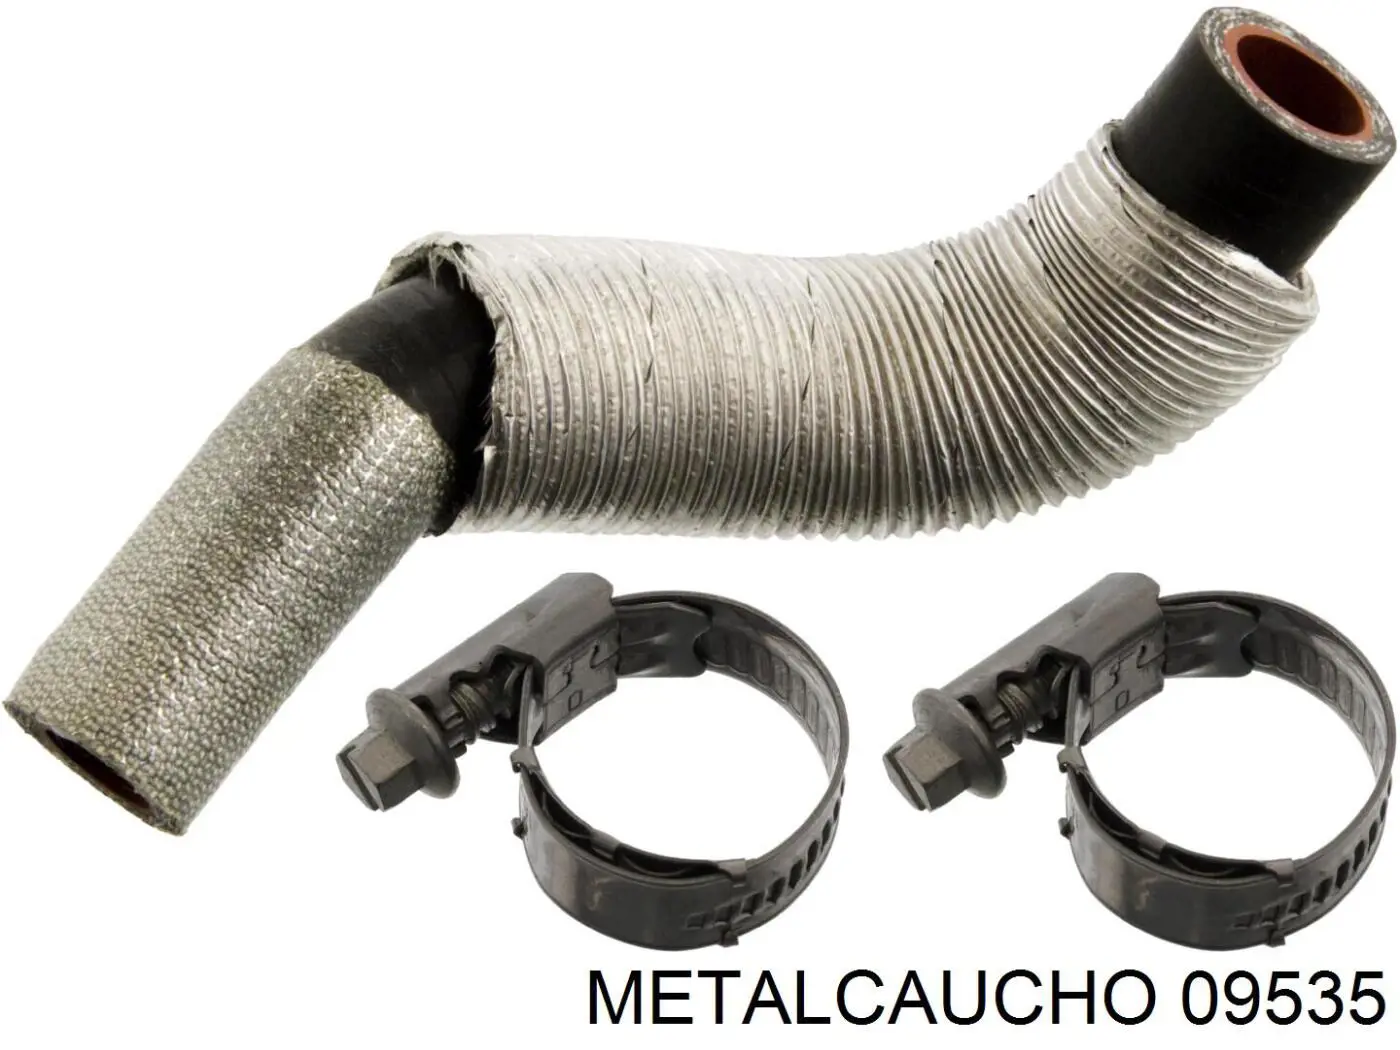 09535 Metalcaucho tubo (manguera Para Drenar El Aceite De Una Turbina)